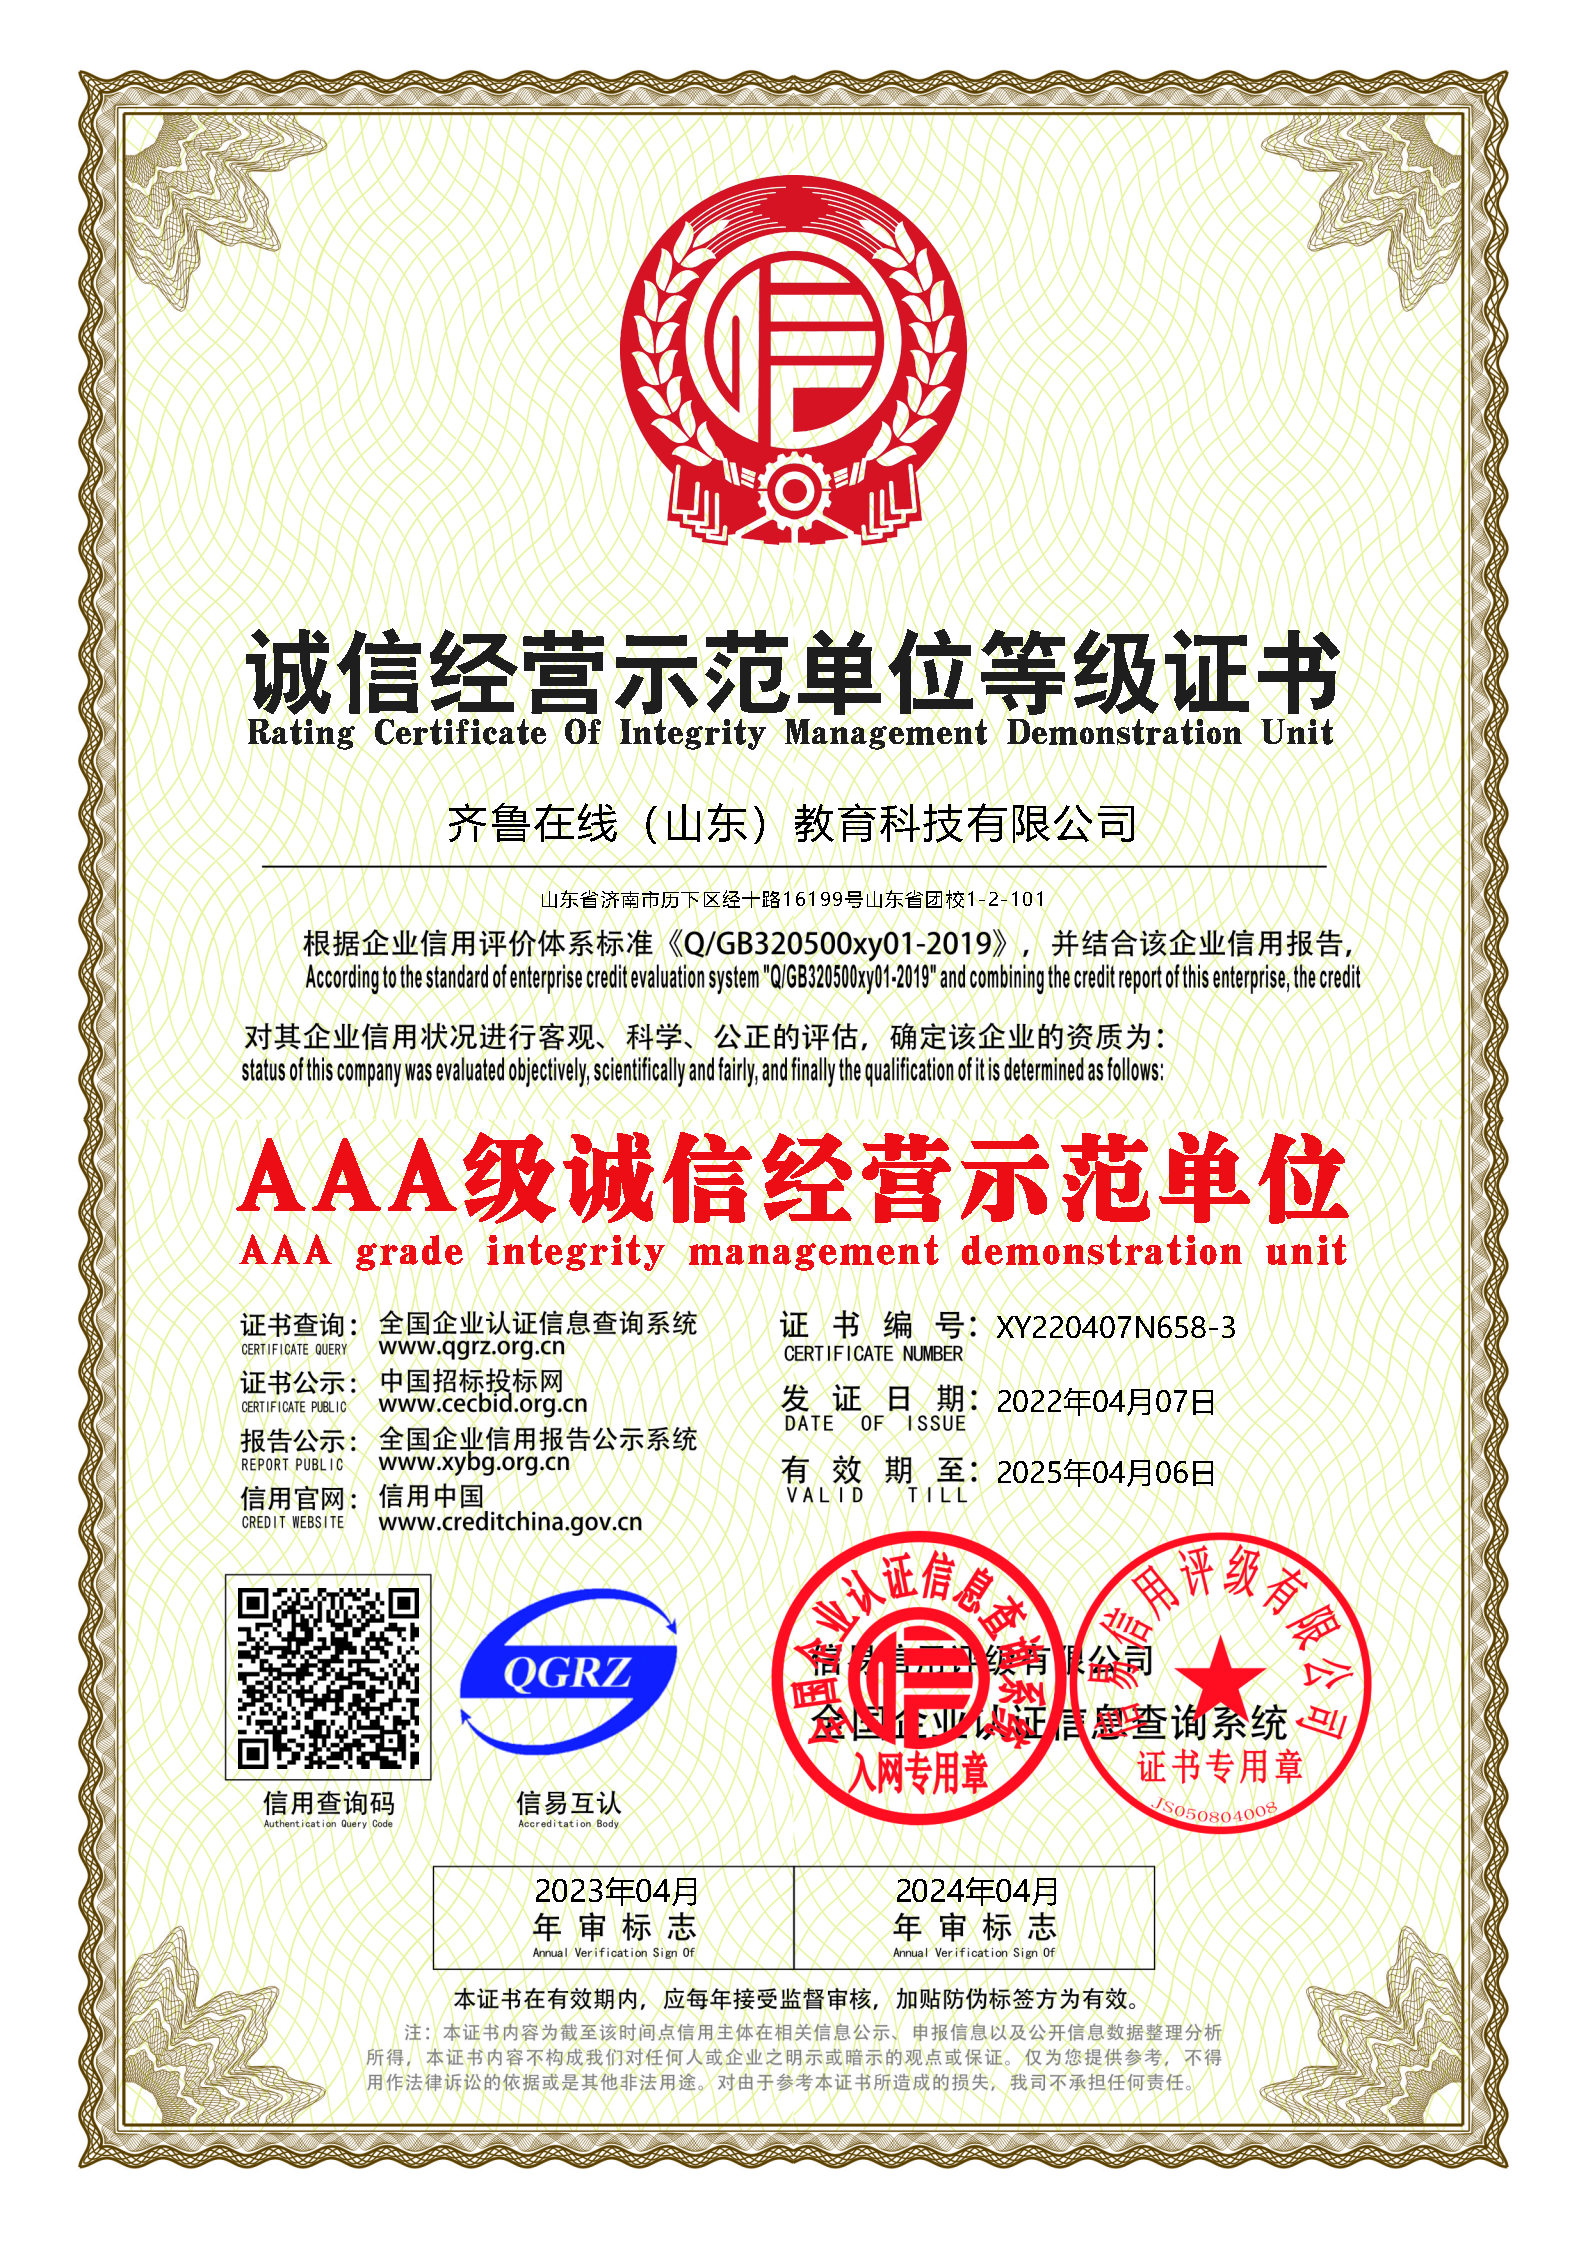 齐鲁在线被评为中国AAA级诚信经营单位